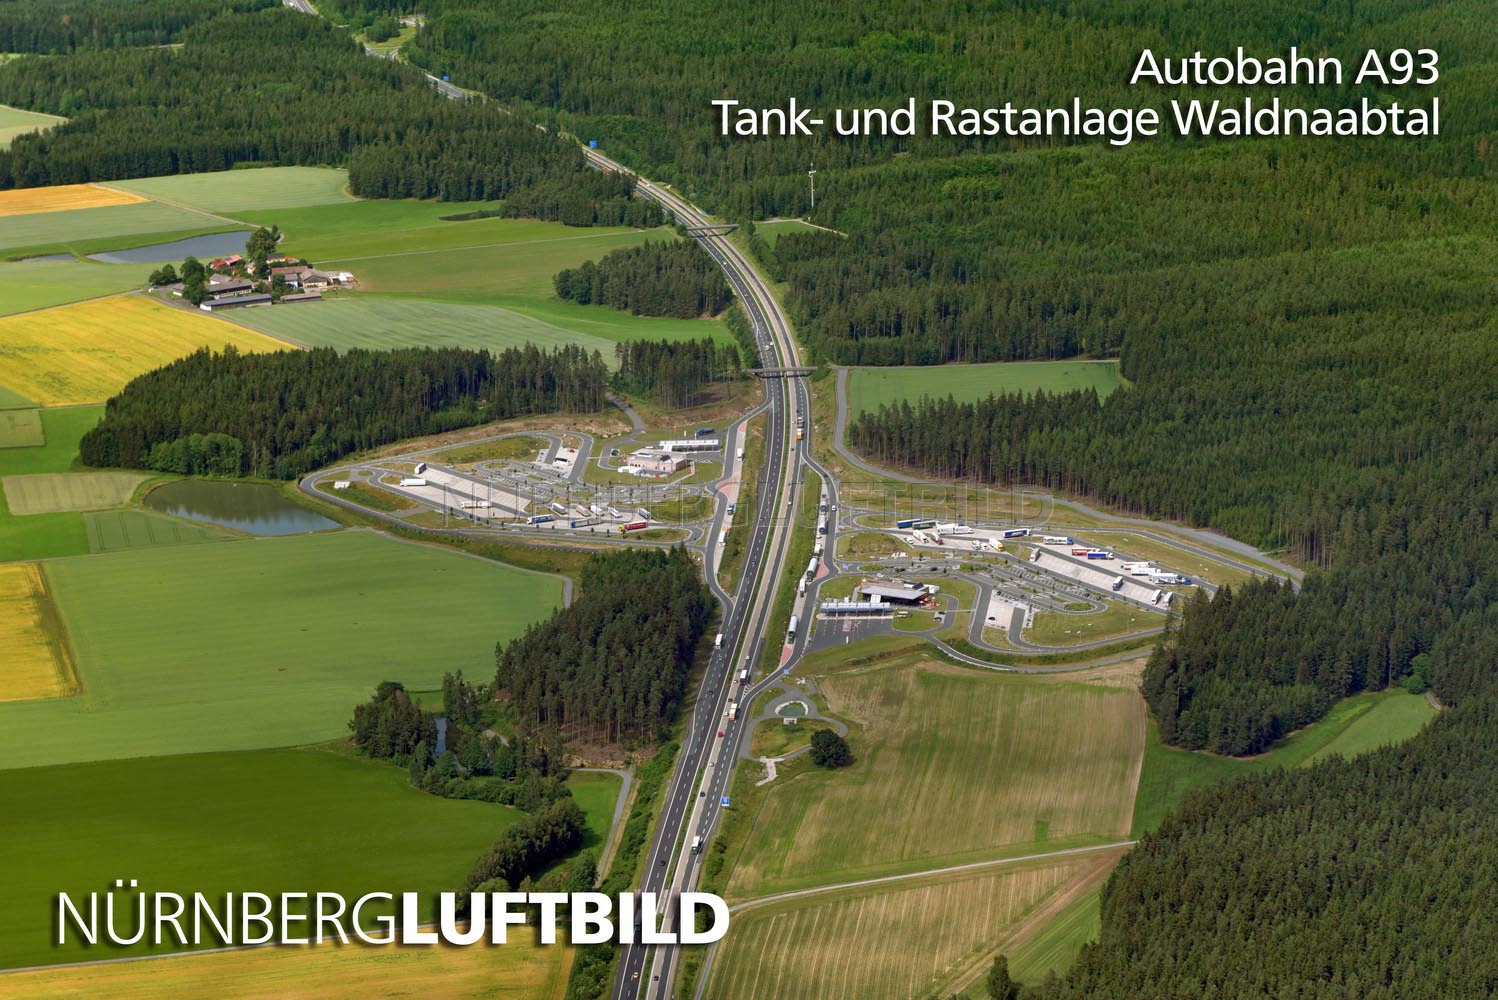 Autobahn A93, Tank- und Rastanlage Waldnaabtal, Luftbild